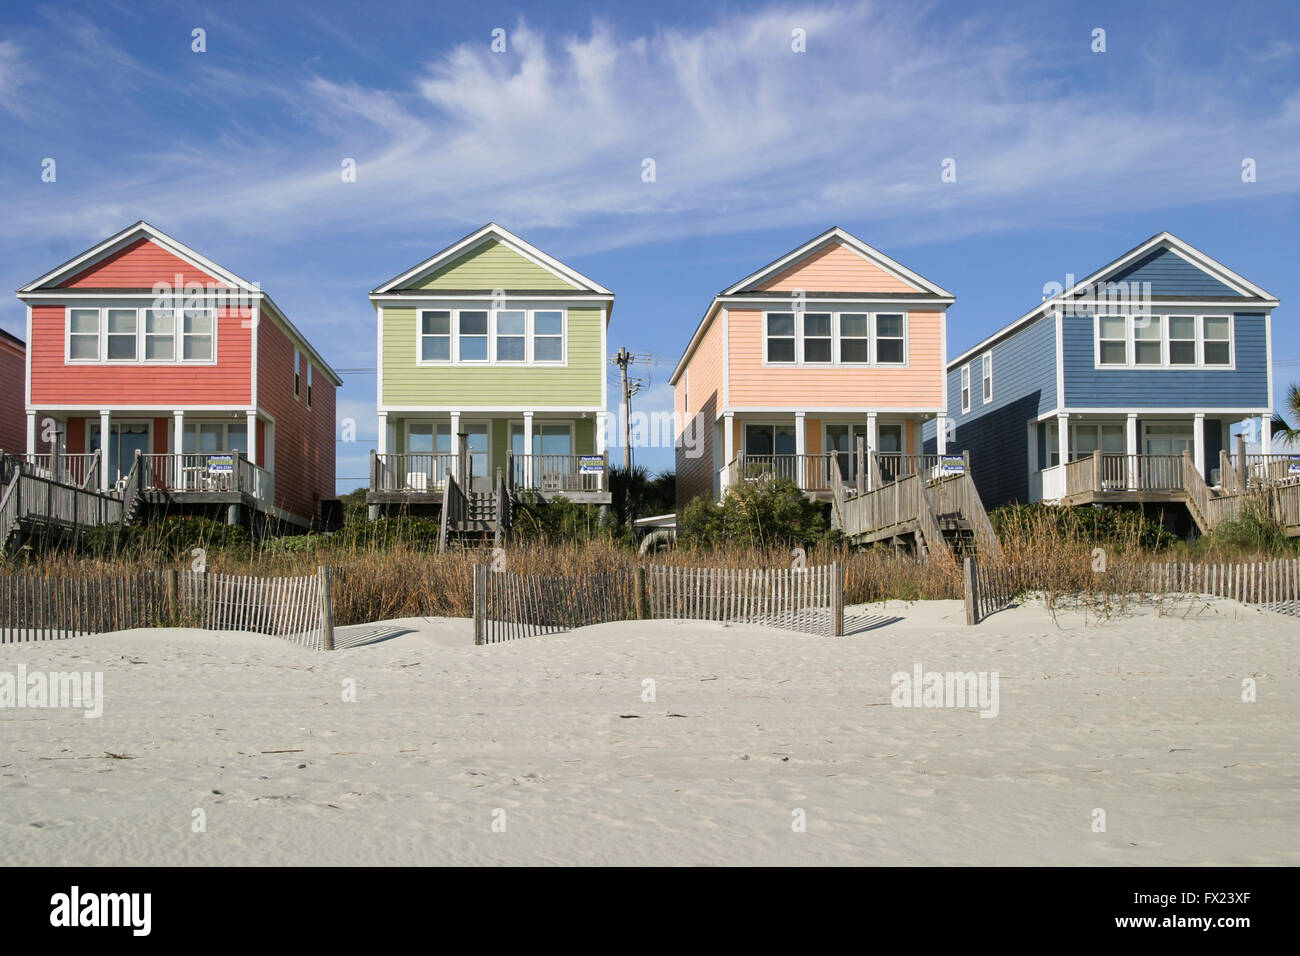 Quattro coloratissimi case sulla spiaggia, Myrtle Beach, S. Carolina, Stati Uniti d'America - dicembre 2009. Foto Stock